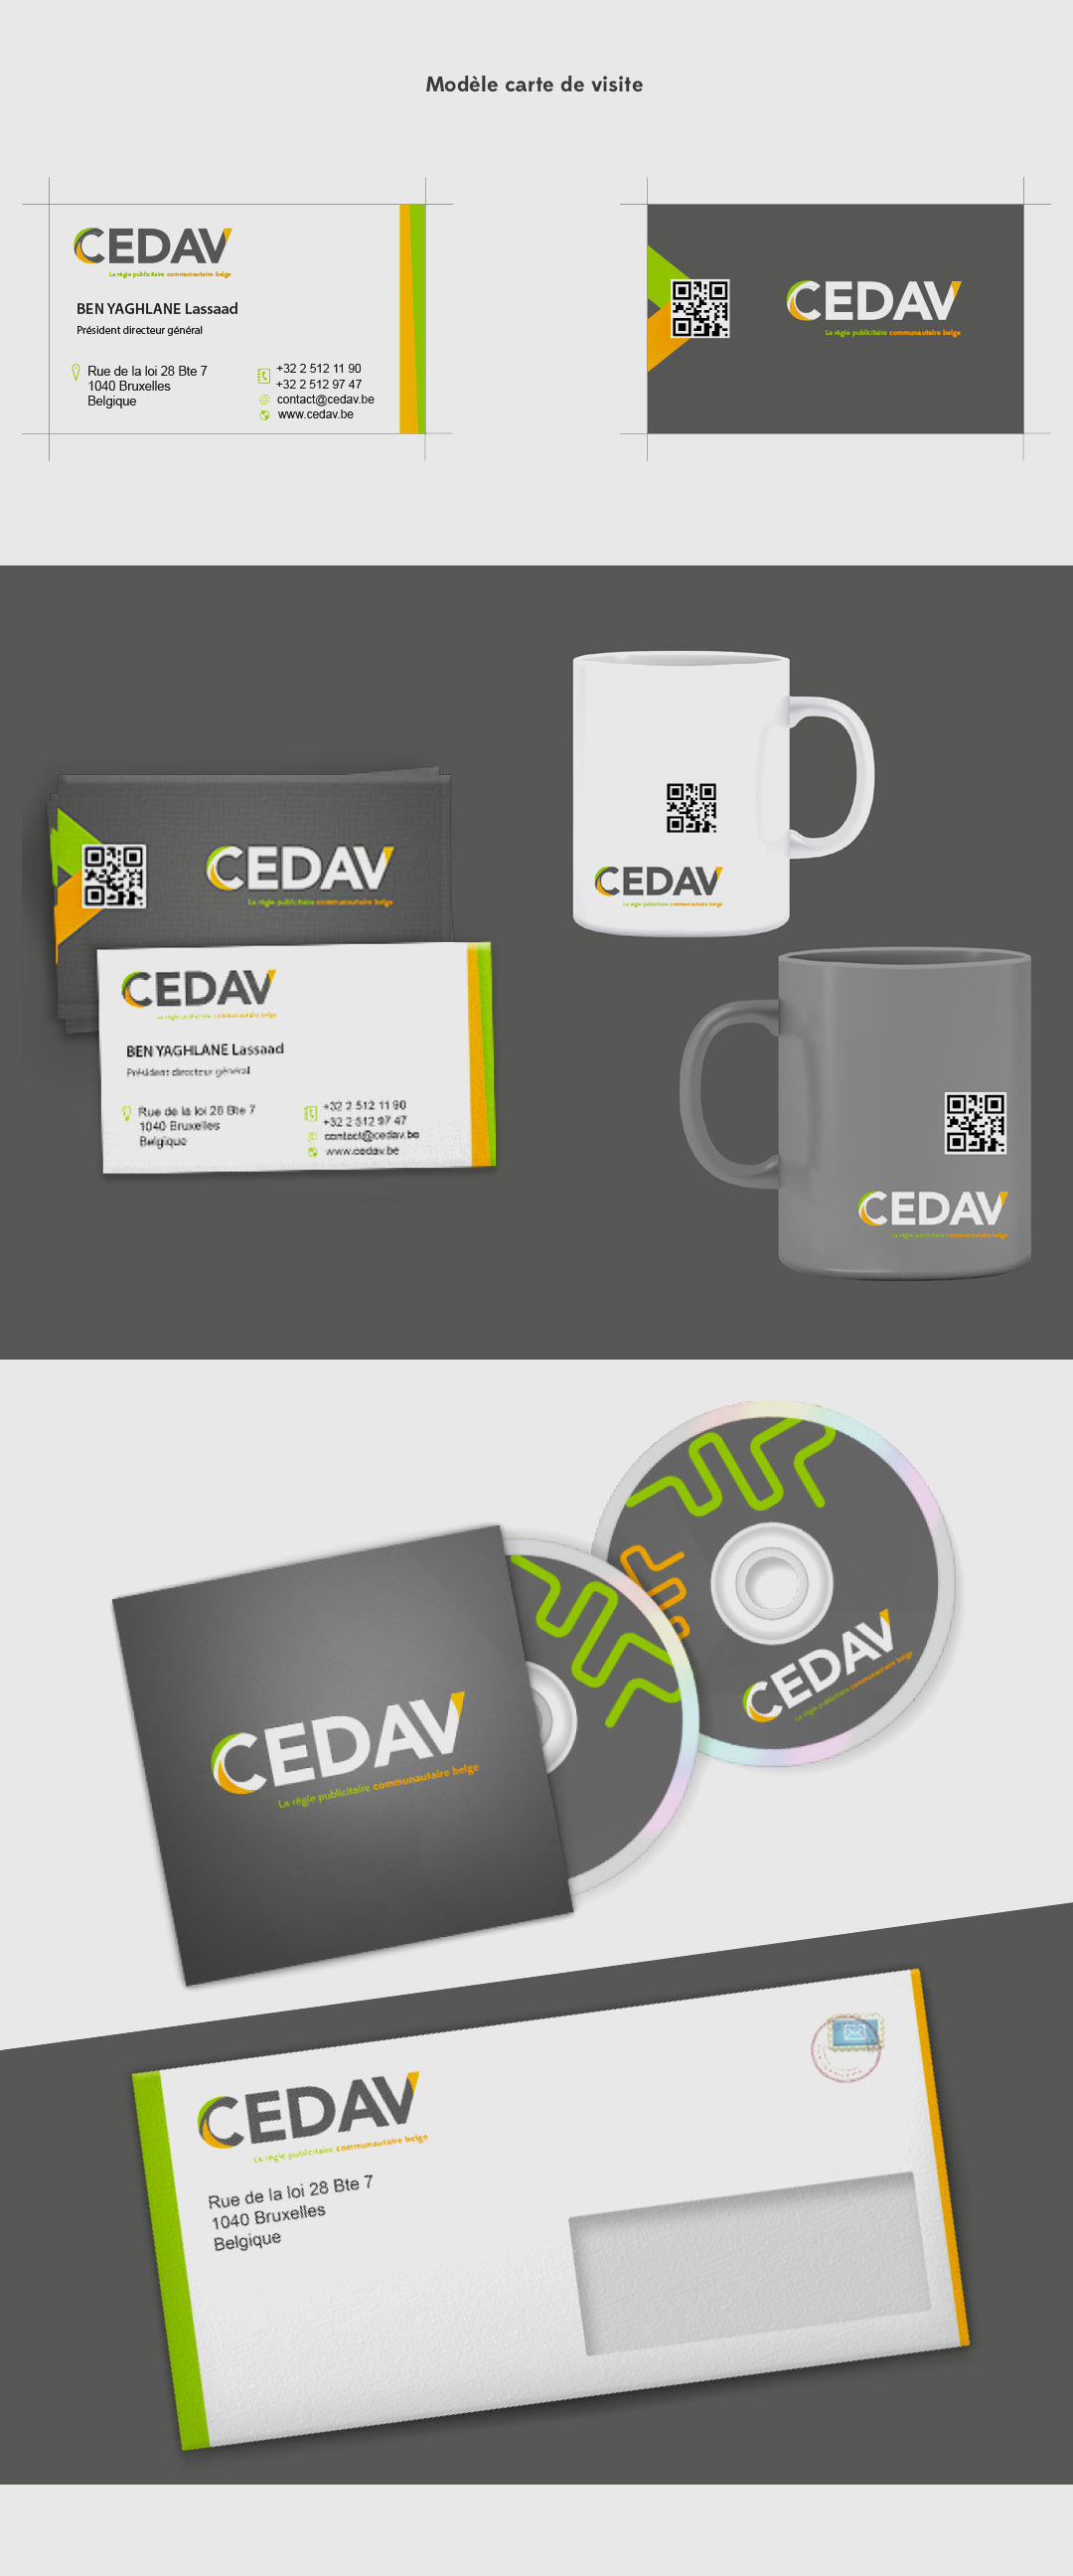 CEDAV Centrale d'Expression et de Développement AudioVisuel centrale Expression developpement audiovisuel logo identité visuelle visual identity identity visual identité visuelle belgium